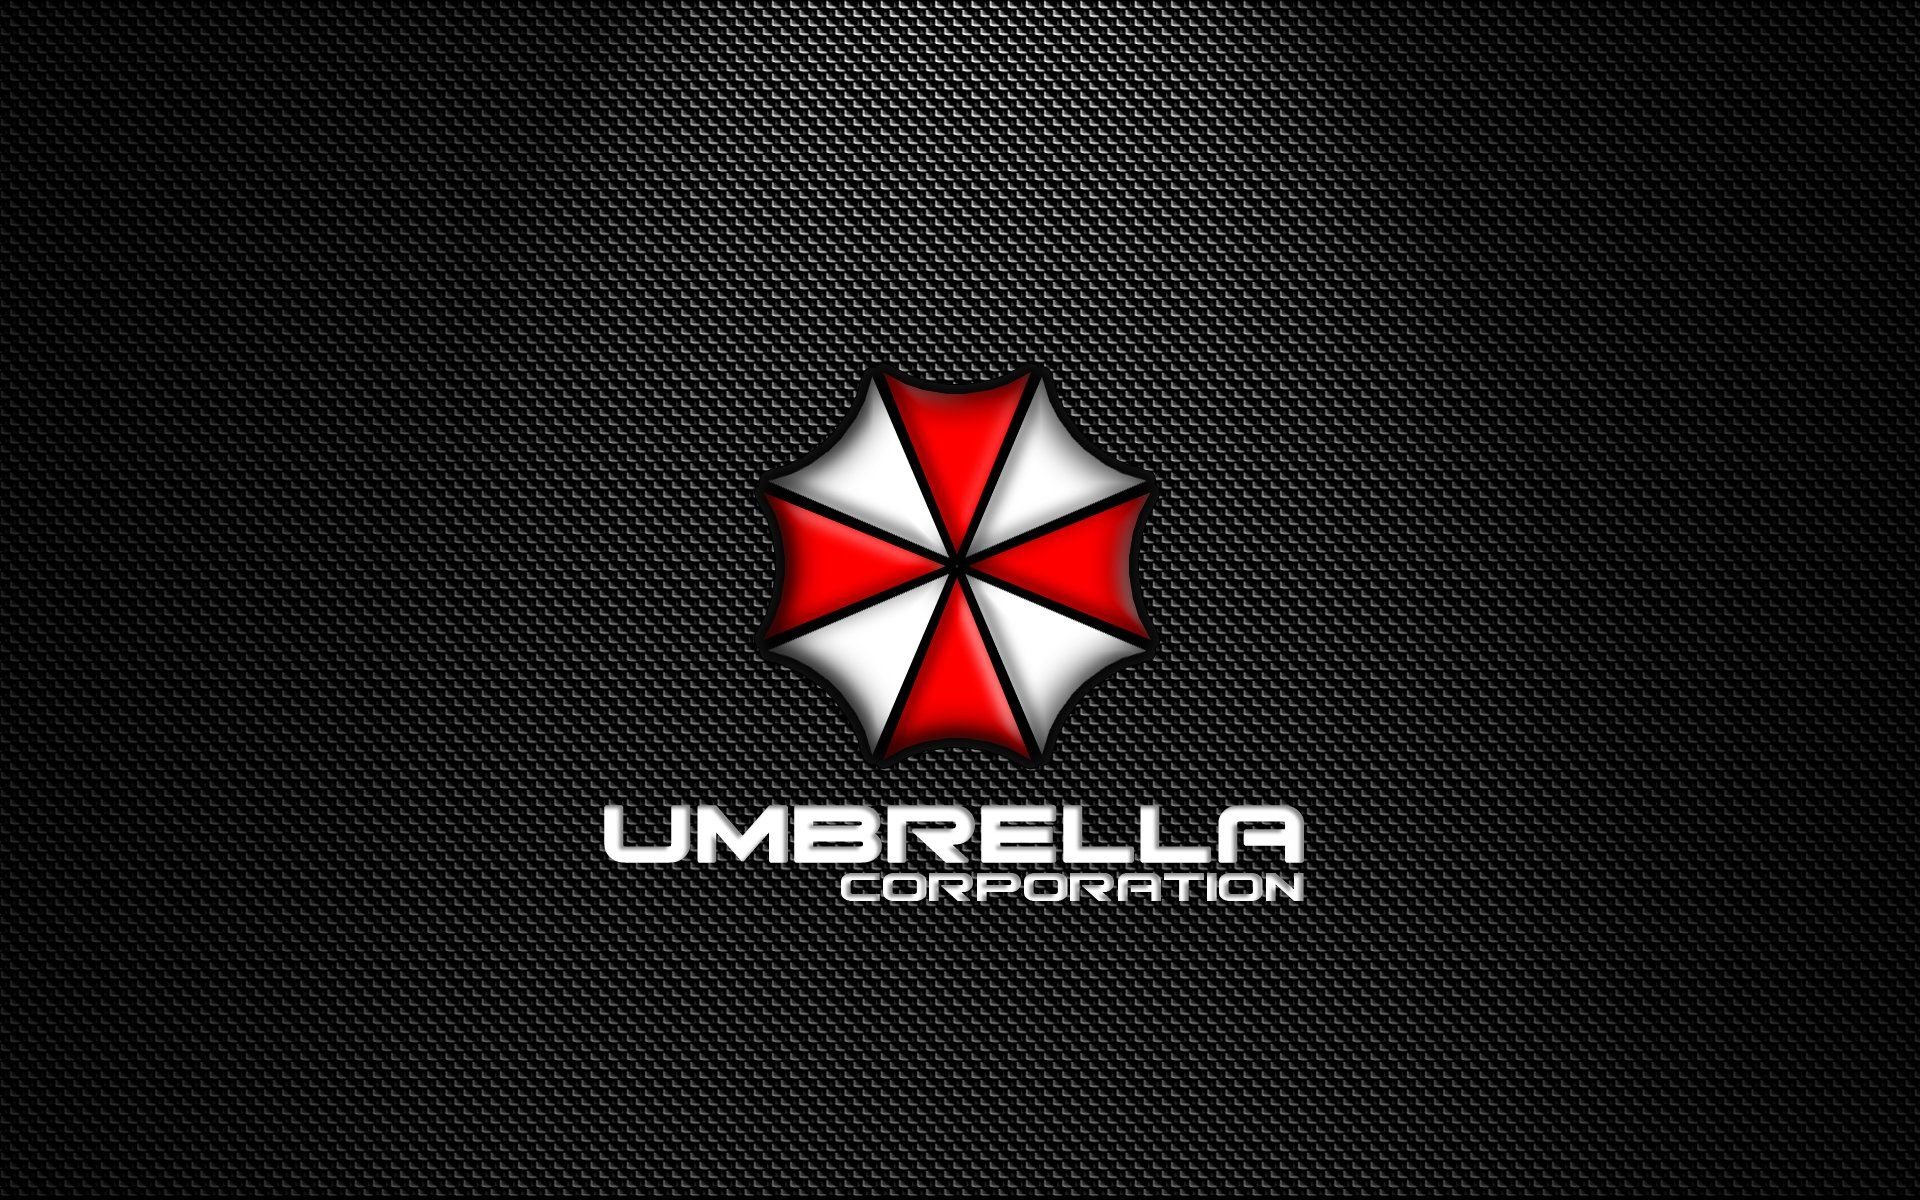 Umbrella Corporation 1920X1200 Wallpapers